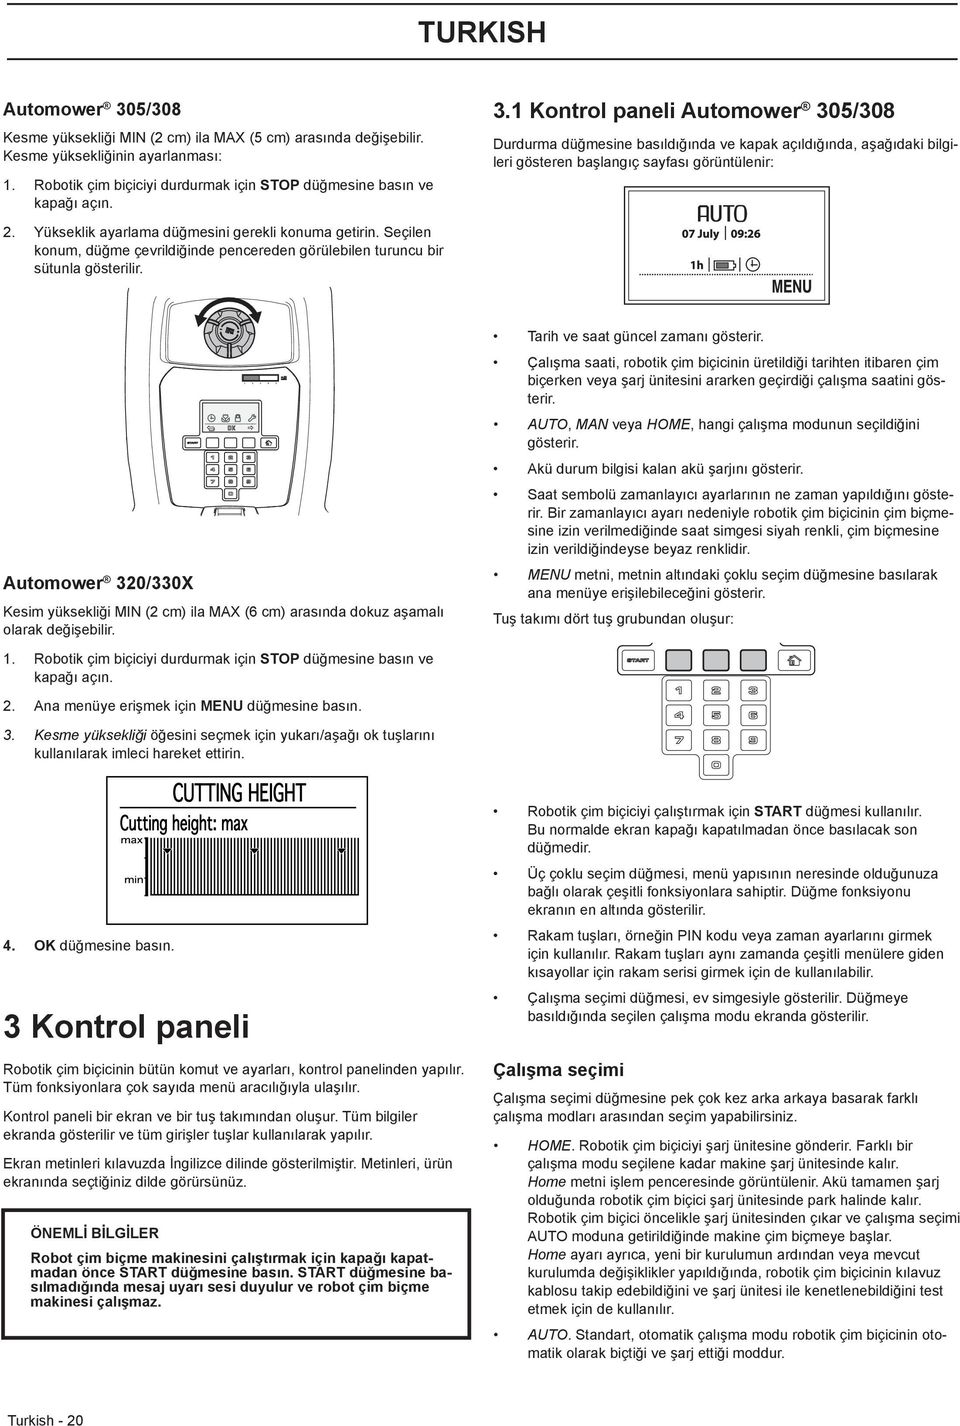 1 Kontrol paneli Automower 305/308 Durdurma düğmesine basıldığında ve kapak açıldığında, aşağıdaki bilgileri gösteren başlangıç sayfası görüntülenir: 2.